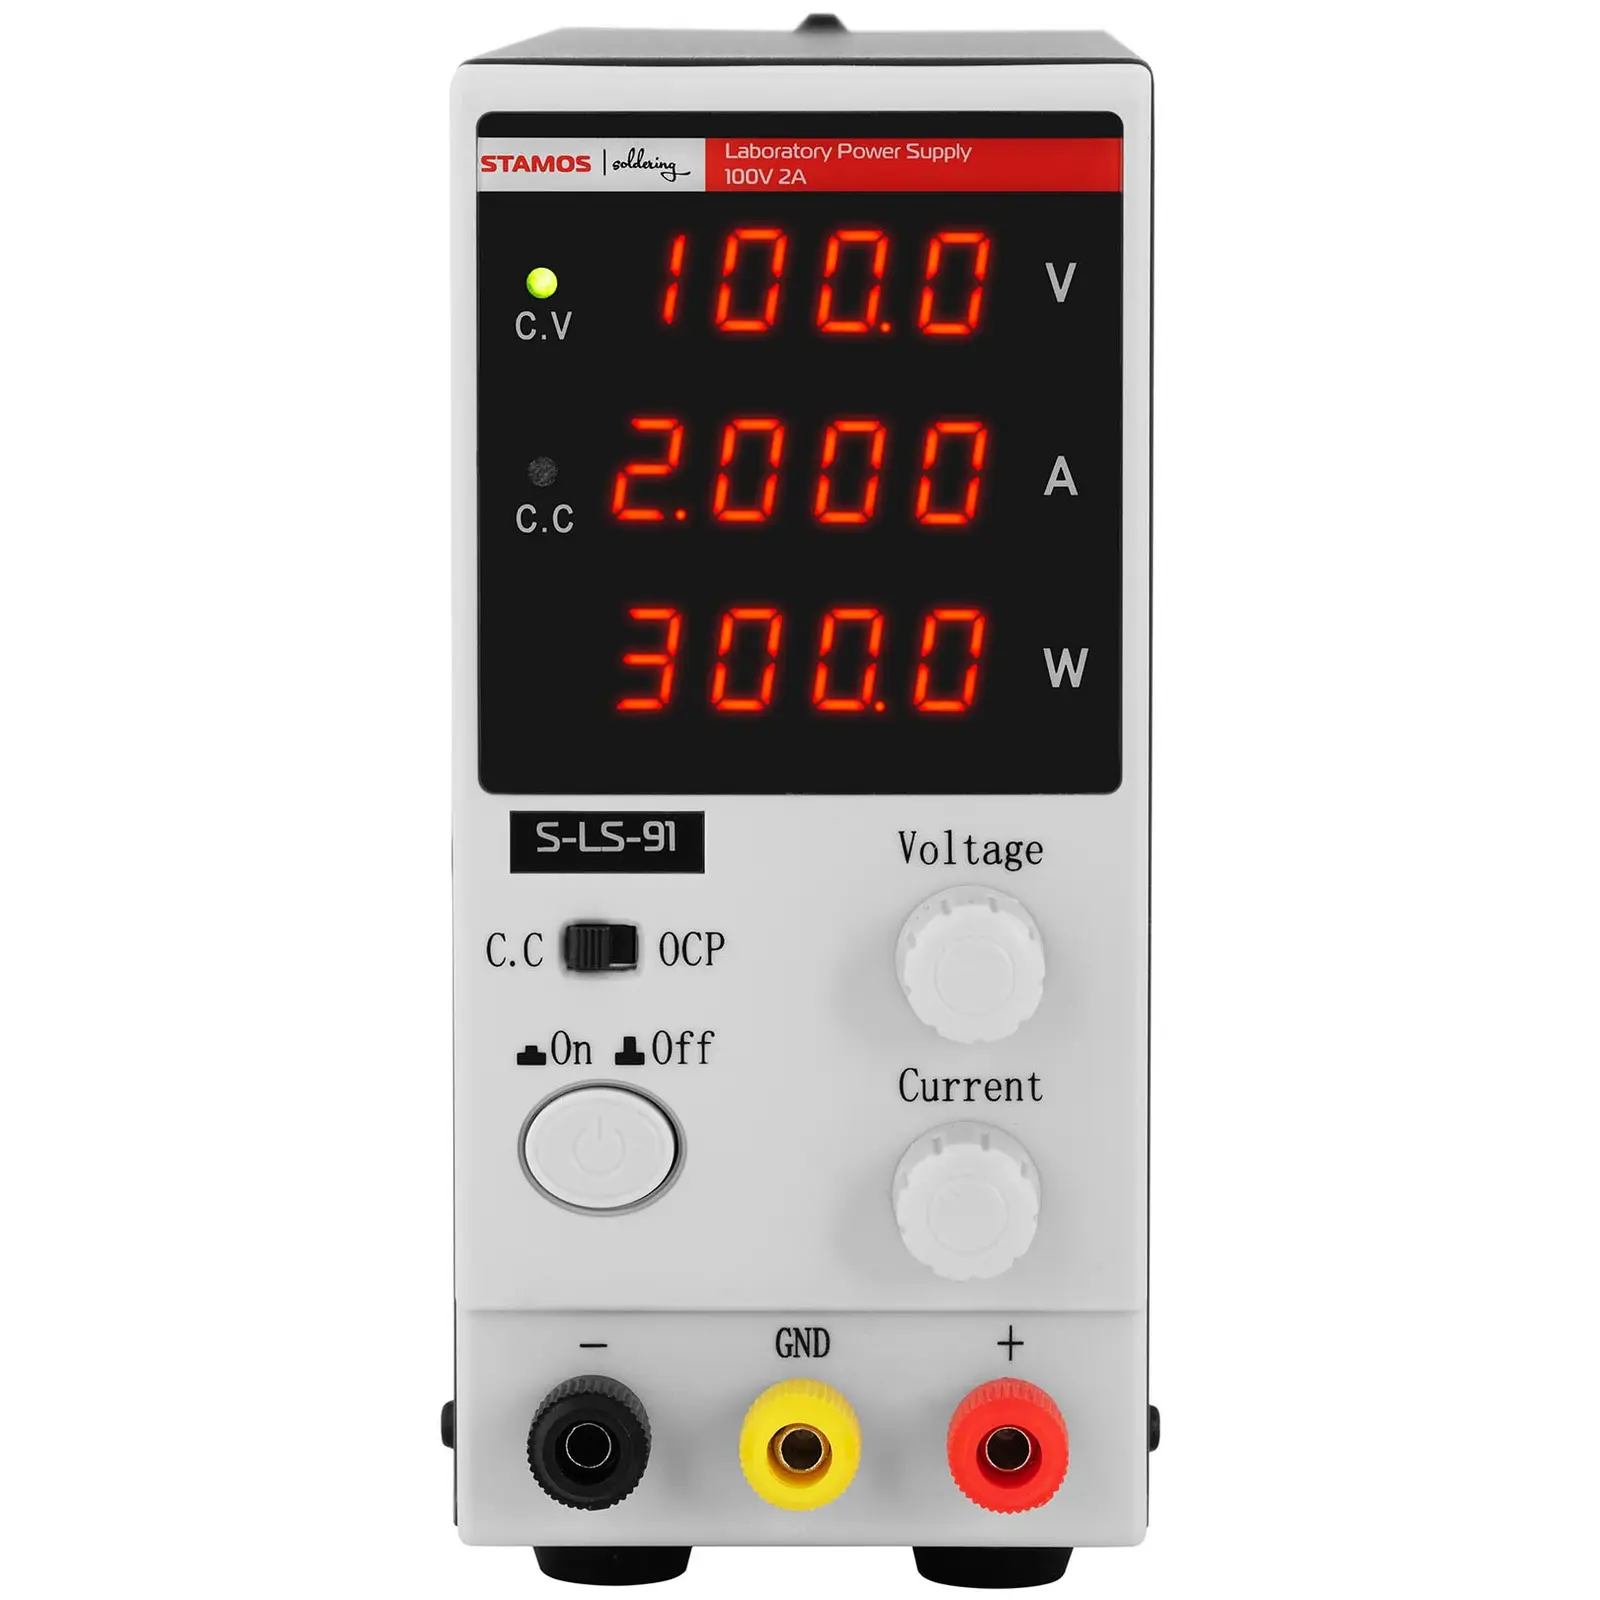 Fuente de alimentación para laboratorio - 0 - 100 V - 0 - 2 A DC - 200 W - pantalla LED de cuatro dígitos